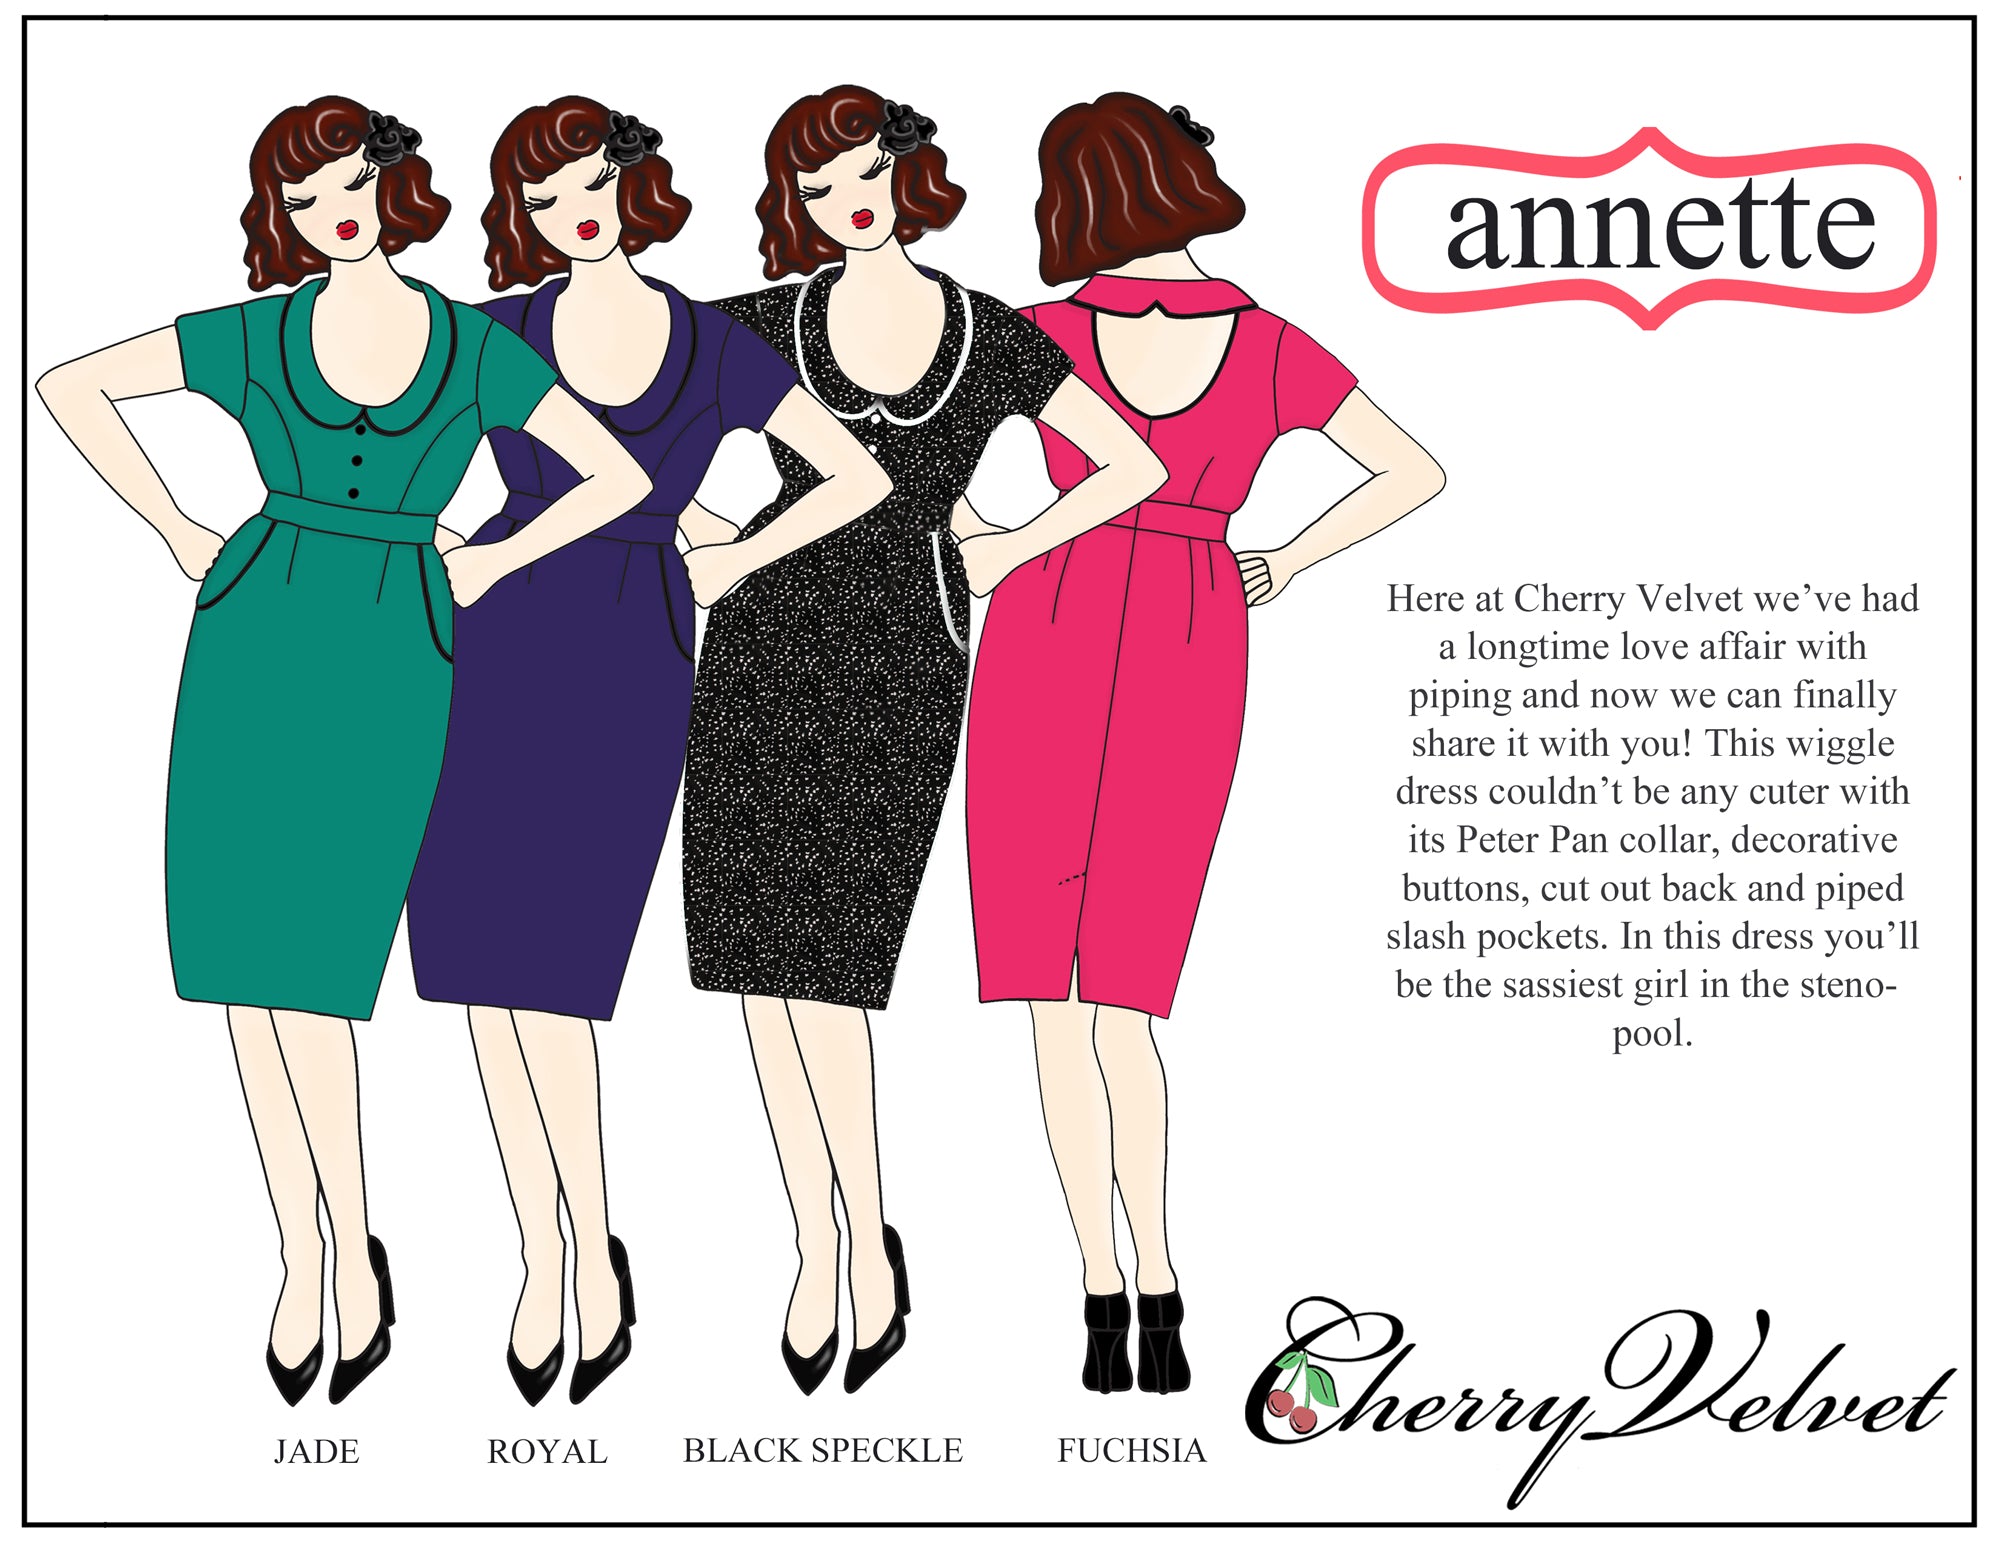 Cherry Velvet Annette dress